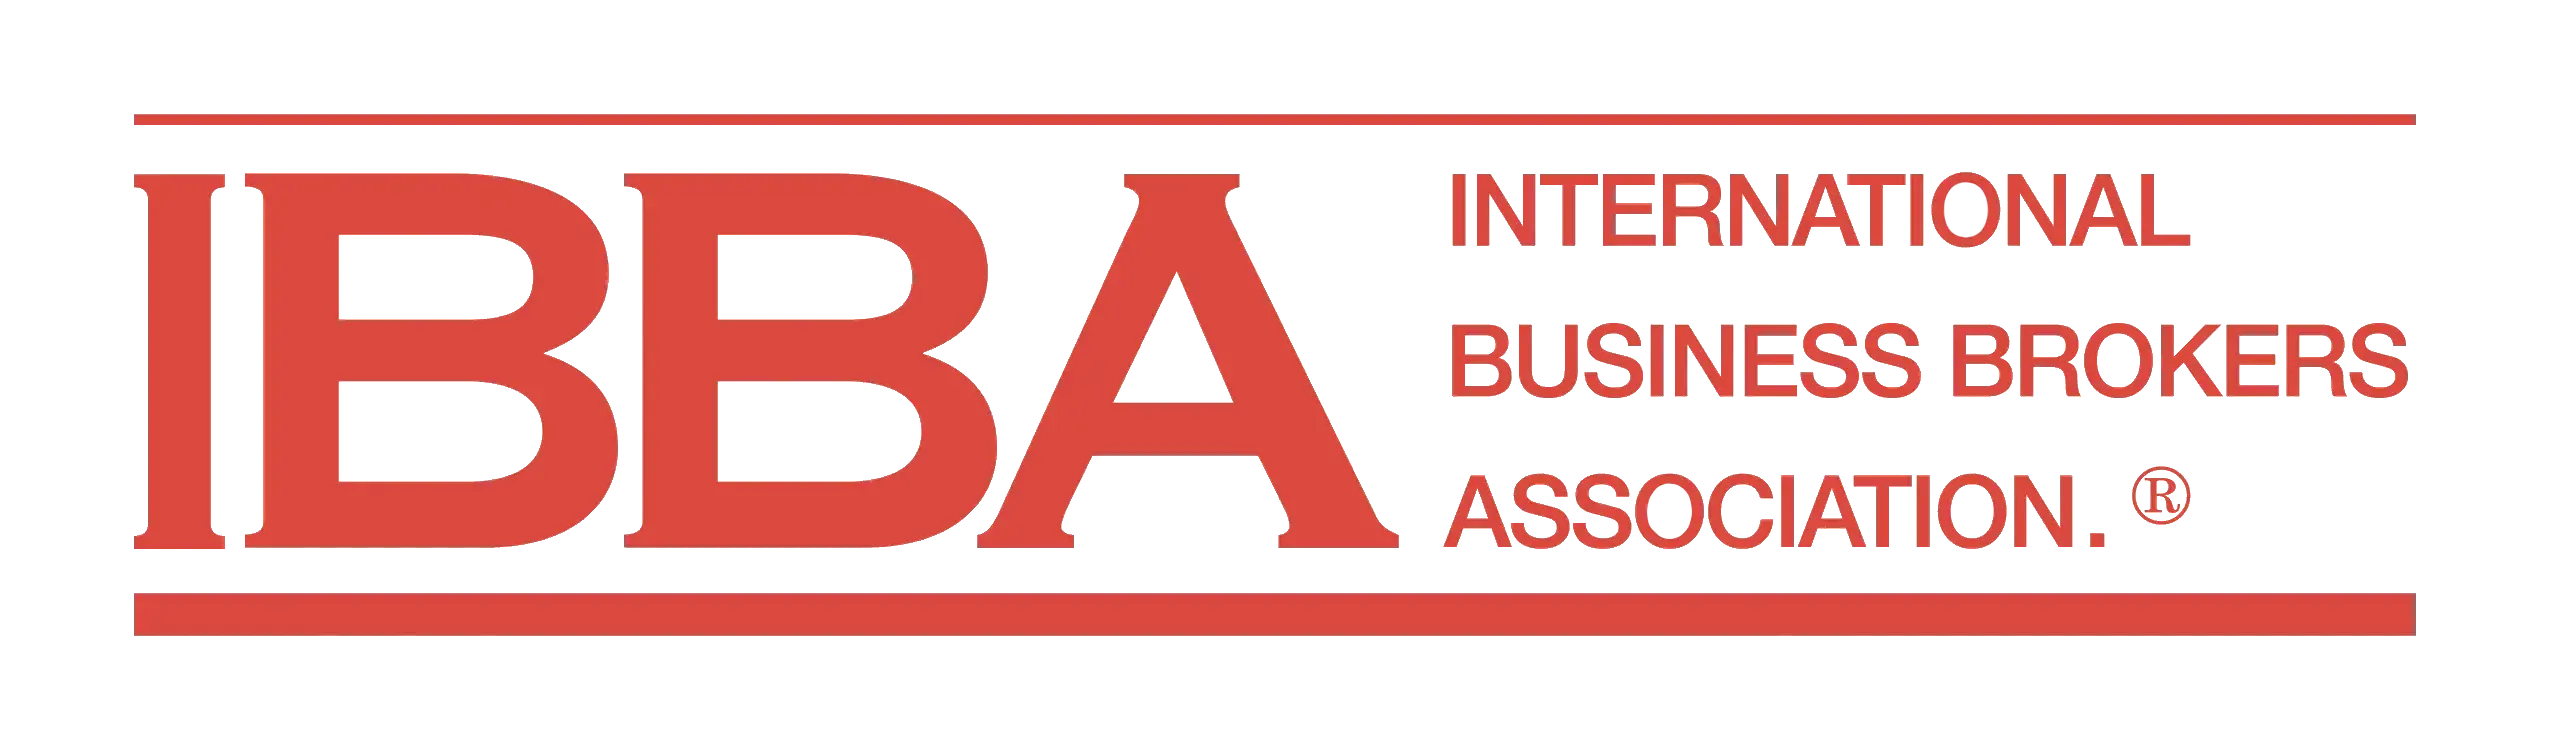 IBBA logo